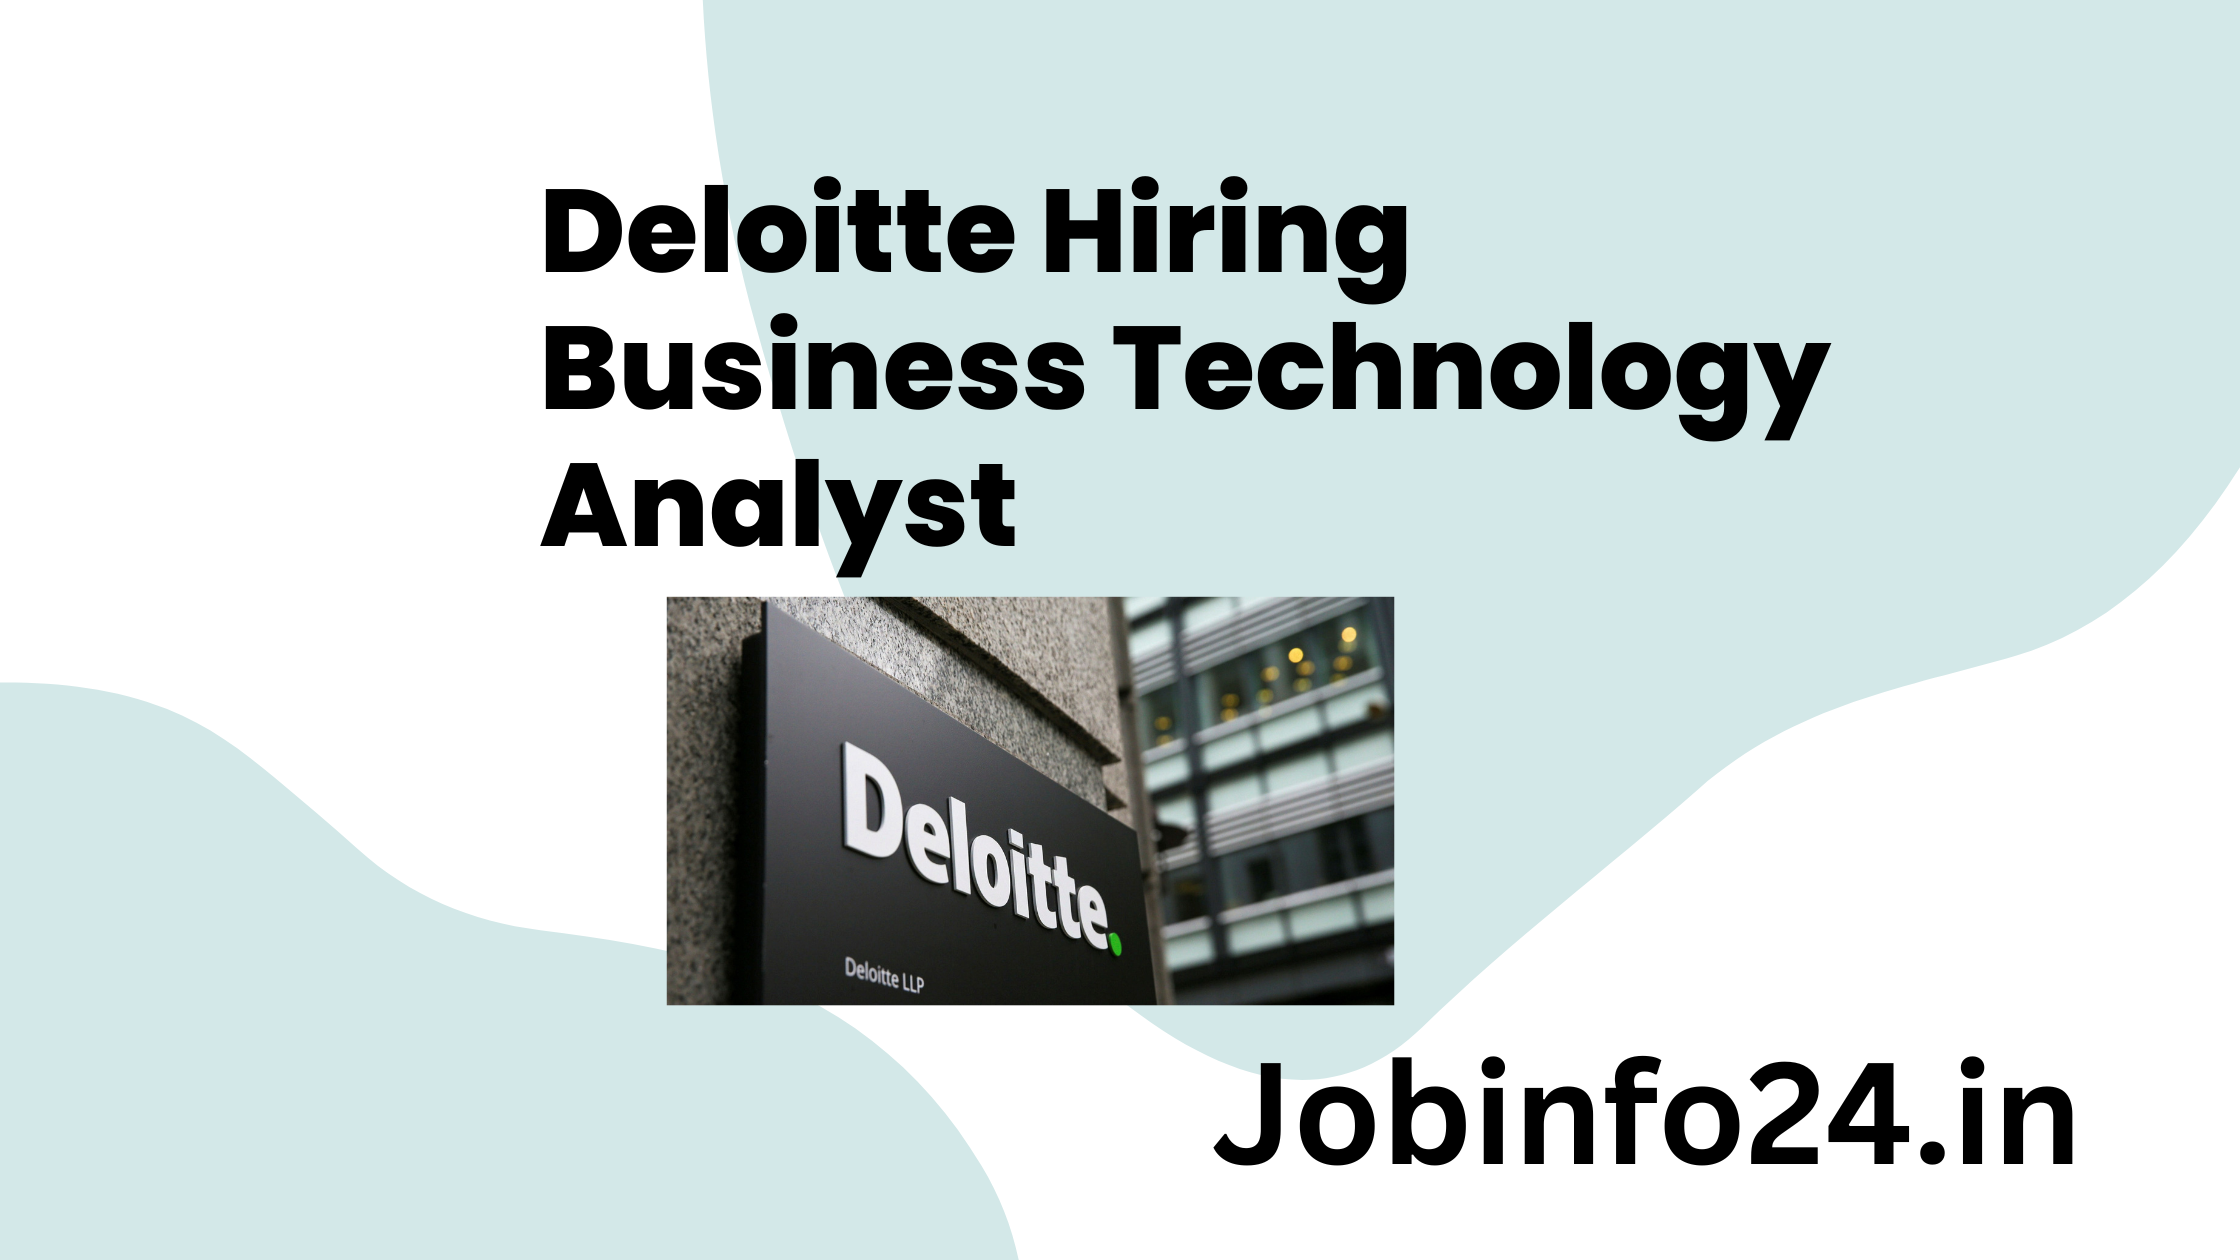 Deloitte Hiring Business Technology Analyst